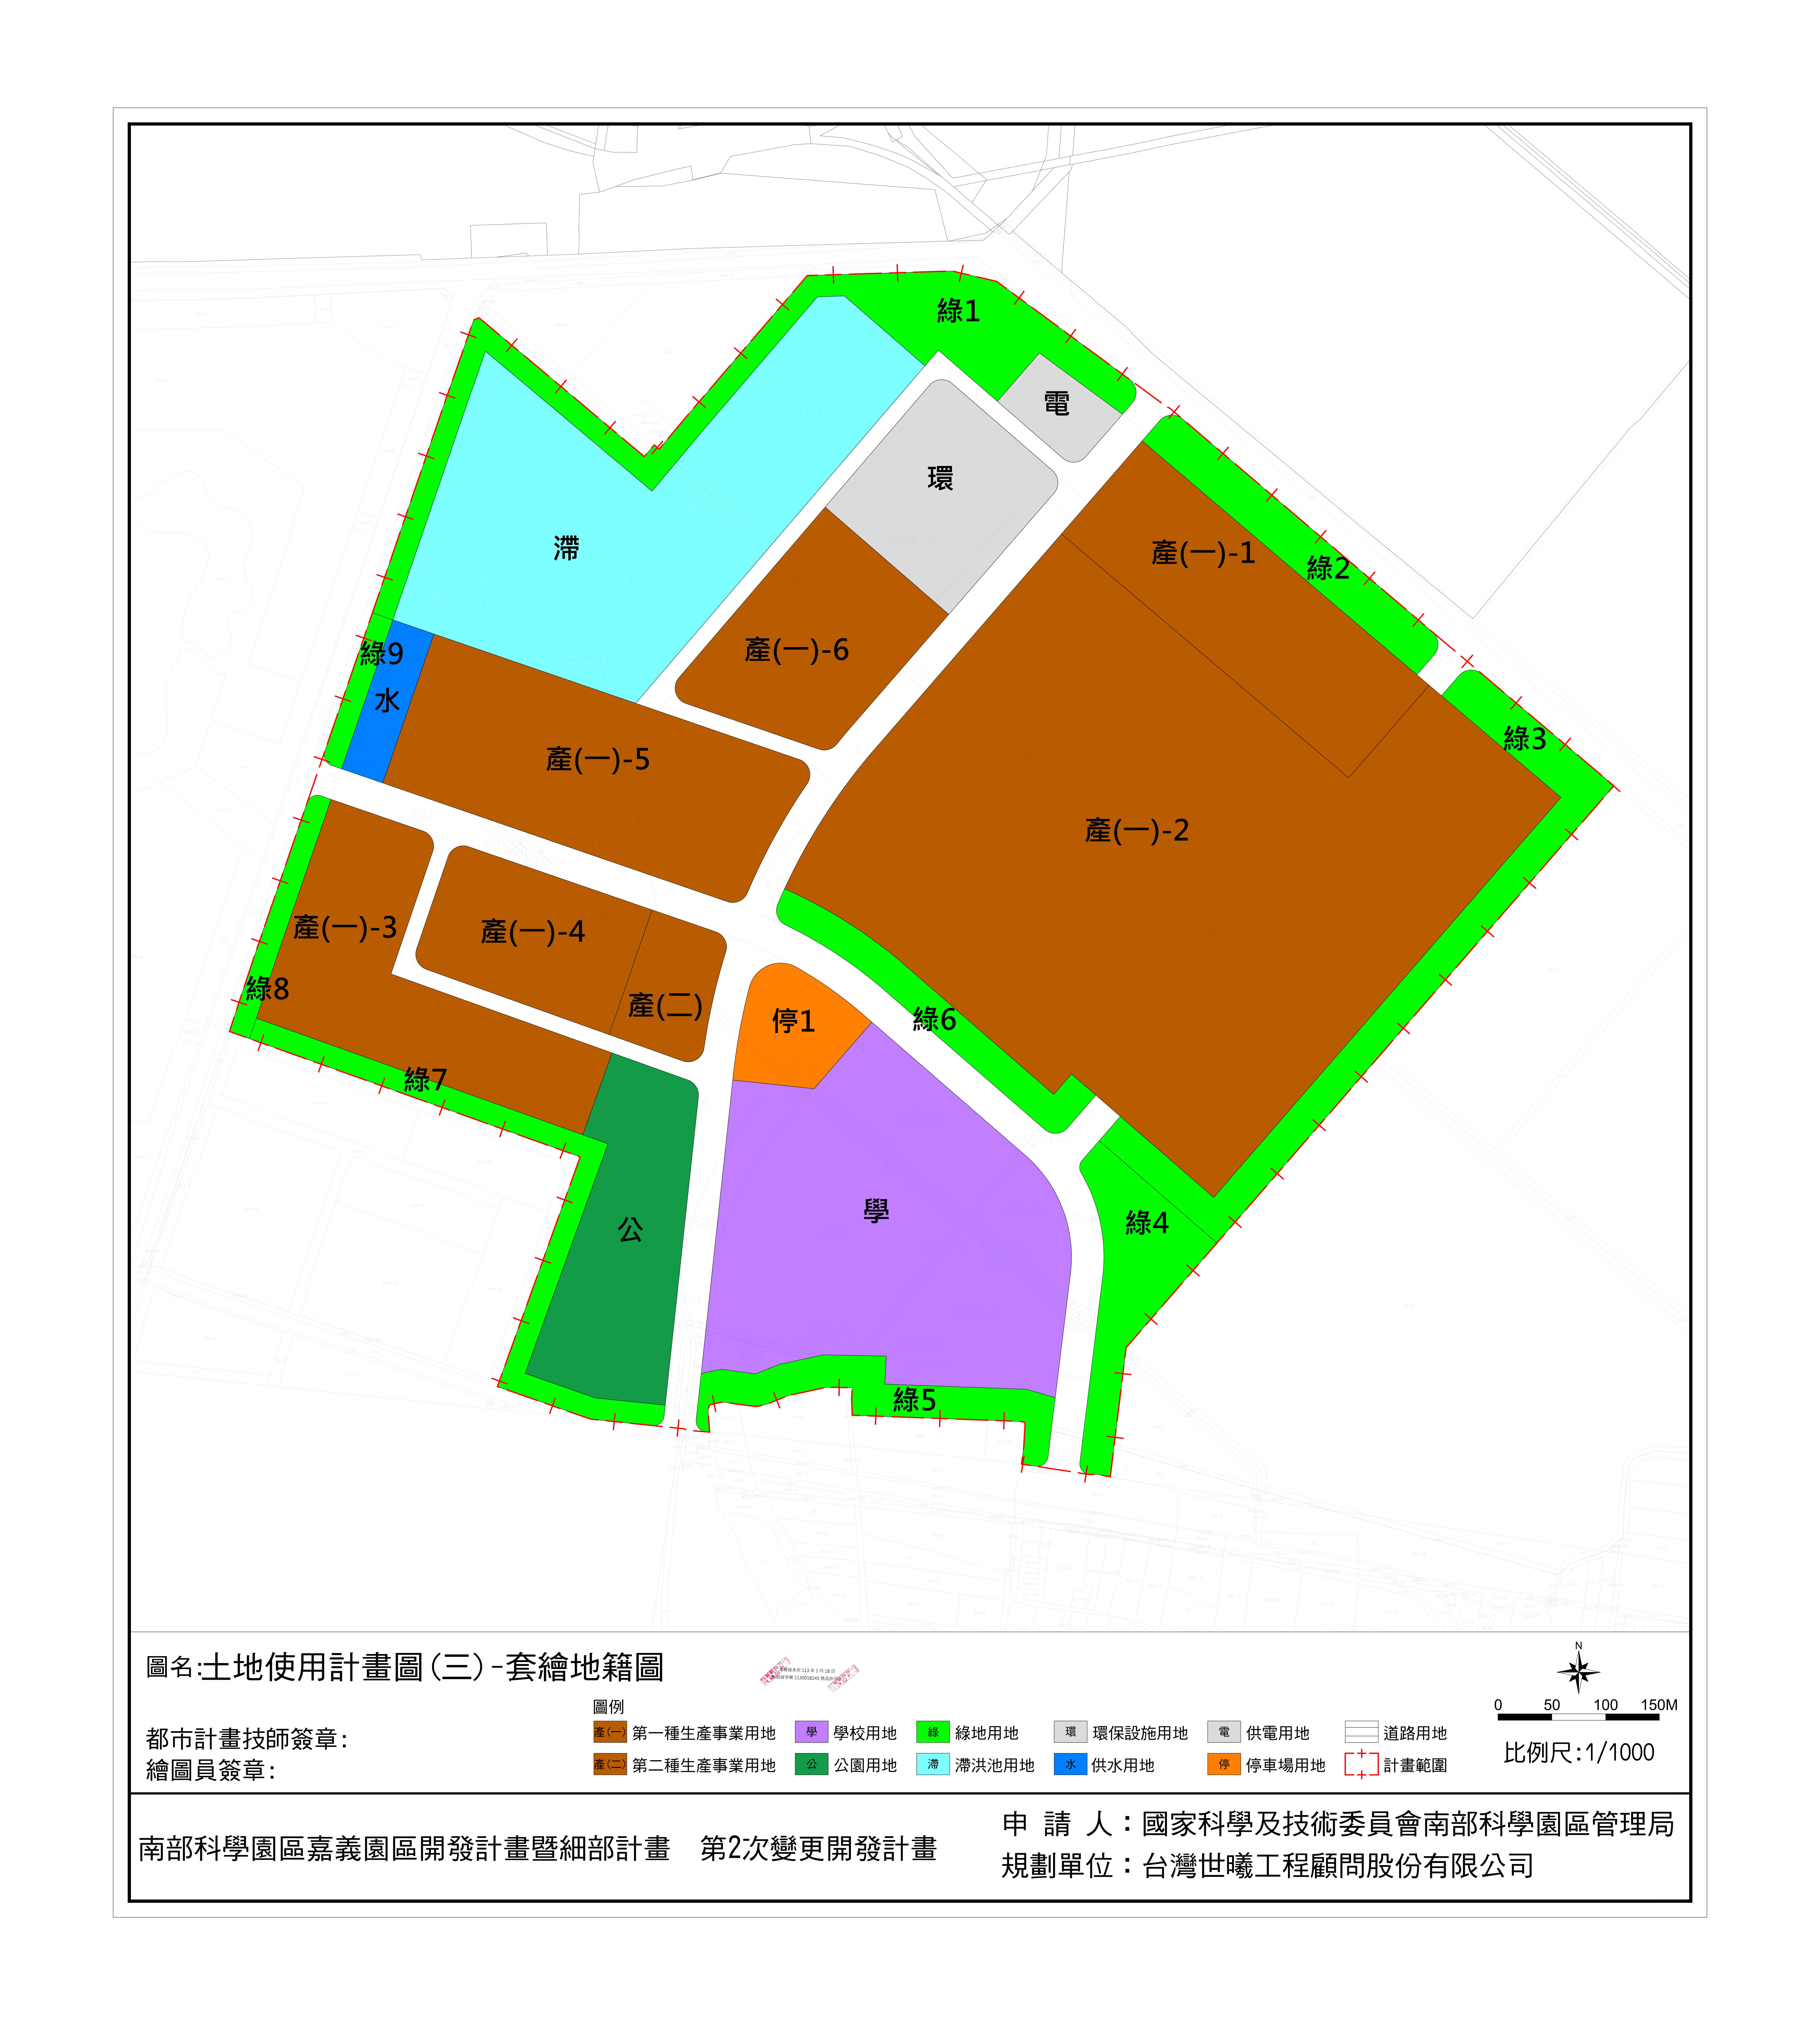 嘉義園區都市計畫示意圖，用以表示嘉義園區土地都市計畫之土地使用分區及公共設施用地規劃情形。